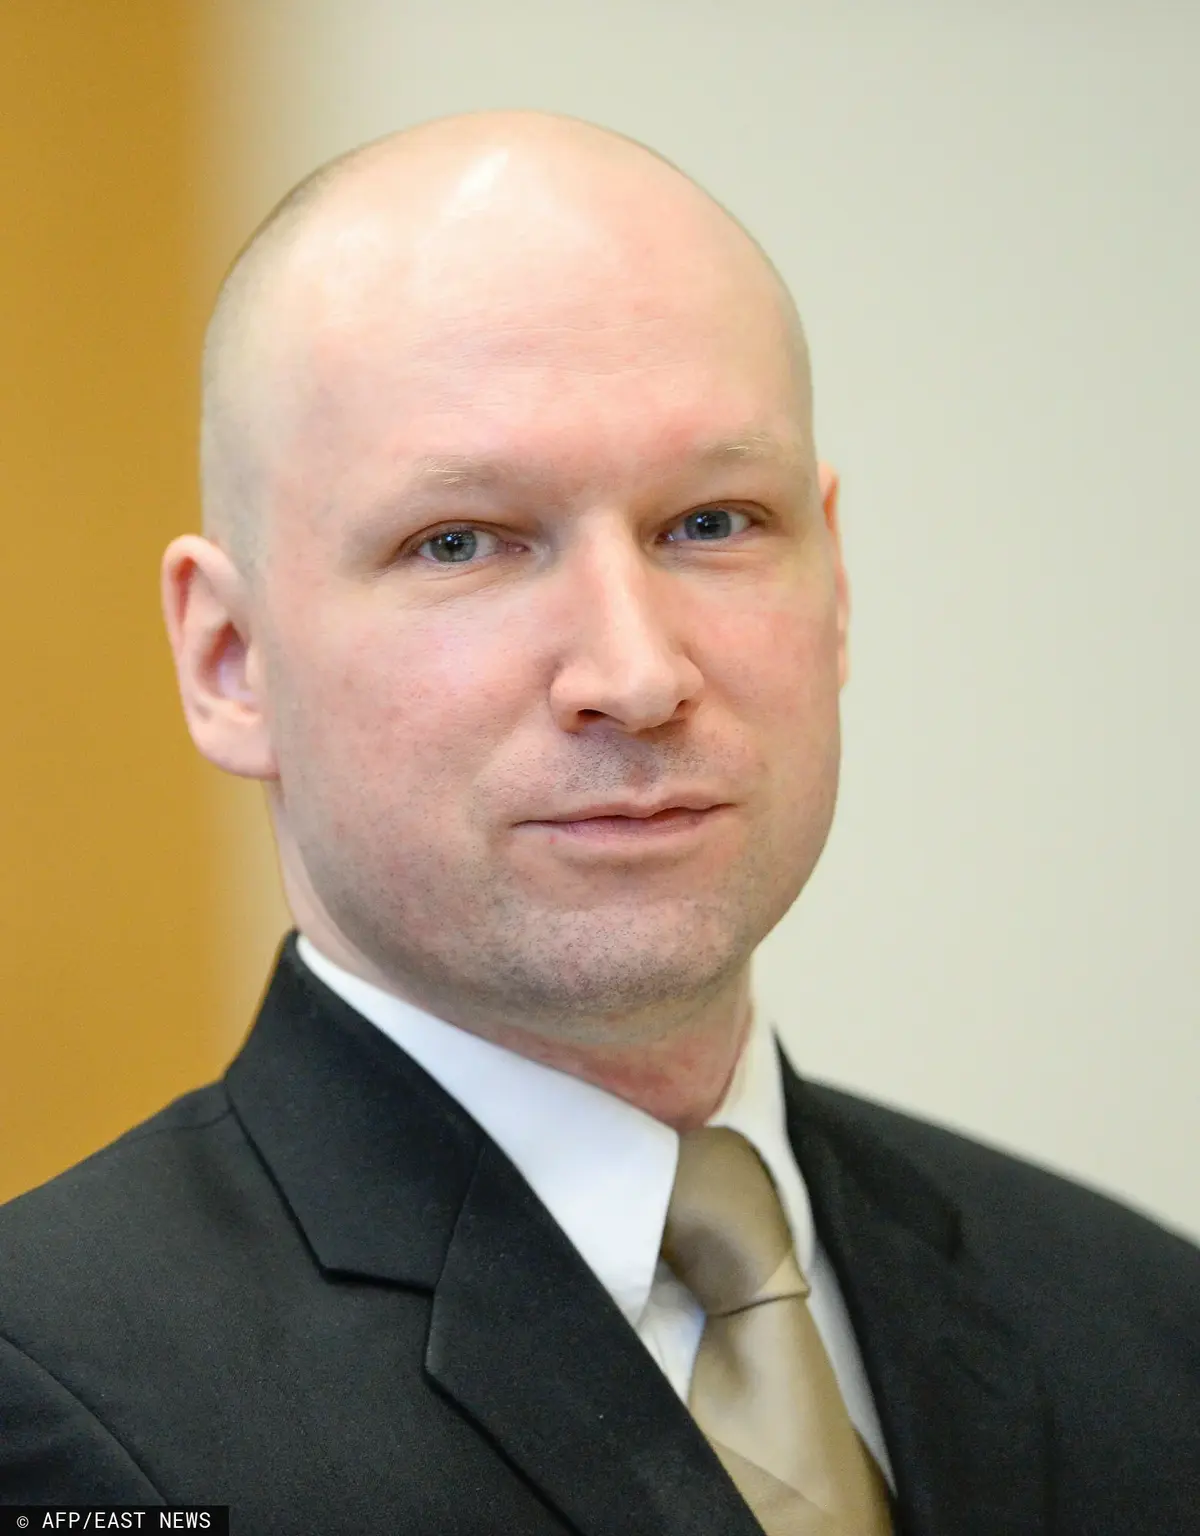 Anders Breivik 